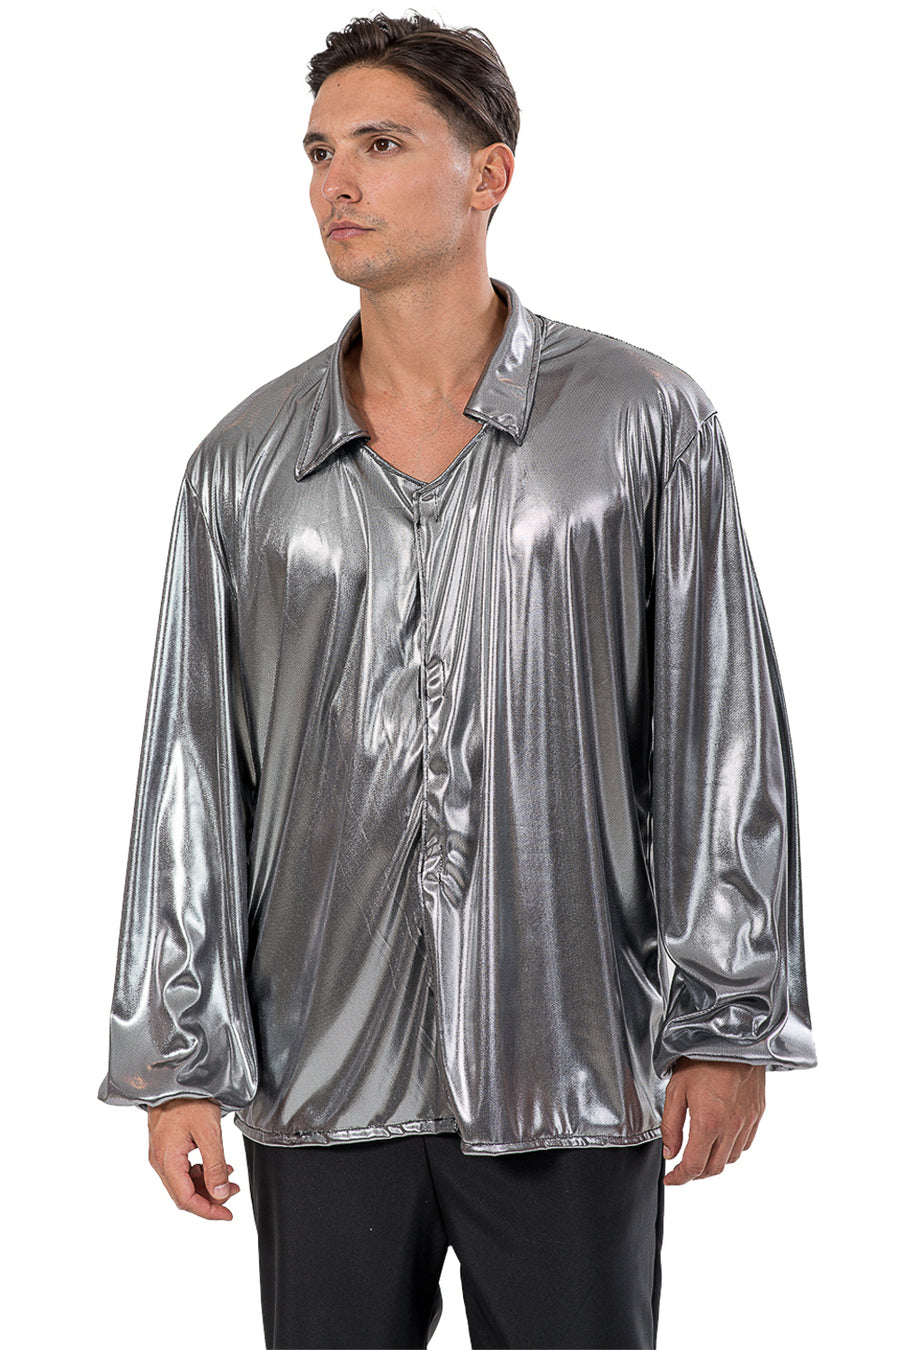 Αποκριάτικη στολή Disco πουκάμισο (ασημί) FF611